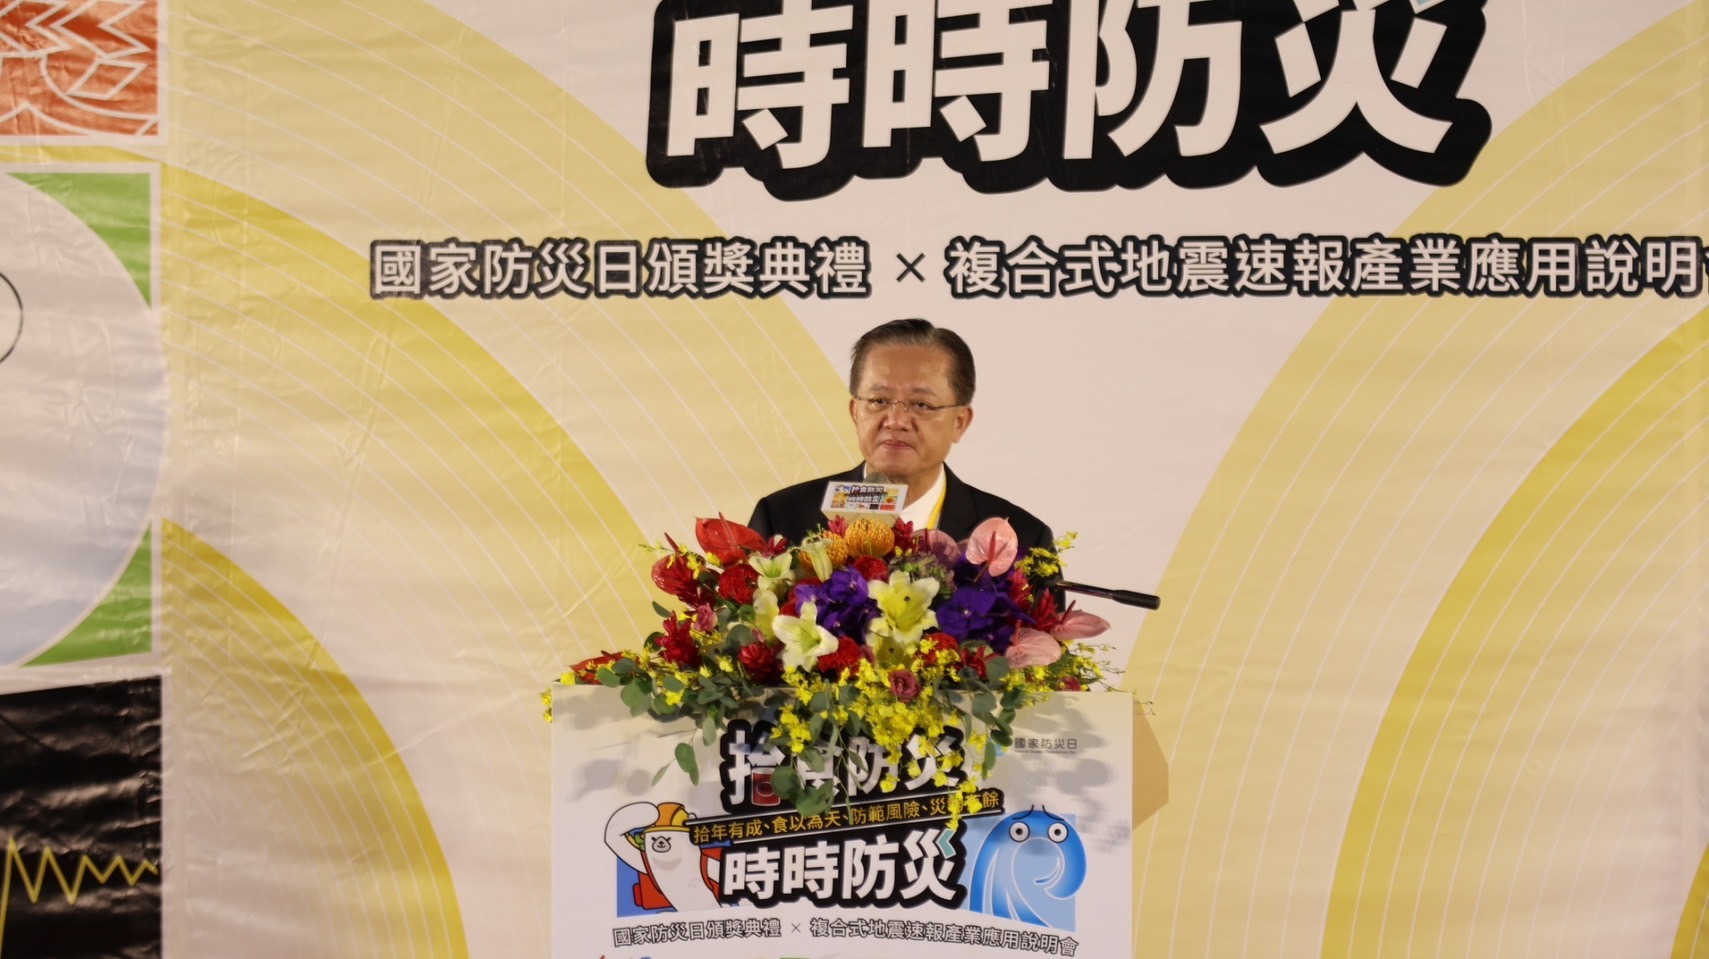 消防署長蕭煥章呼籲民眾積極參與推廣防災活動及教育訓練，支持政府各項防災政策，以達提升整體社會防災韌性之目標。